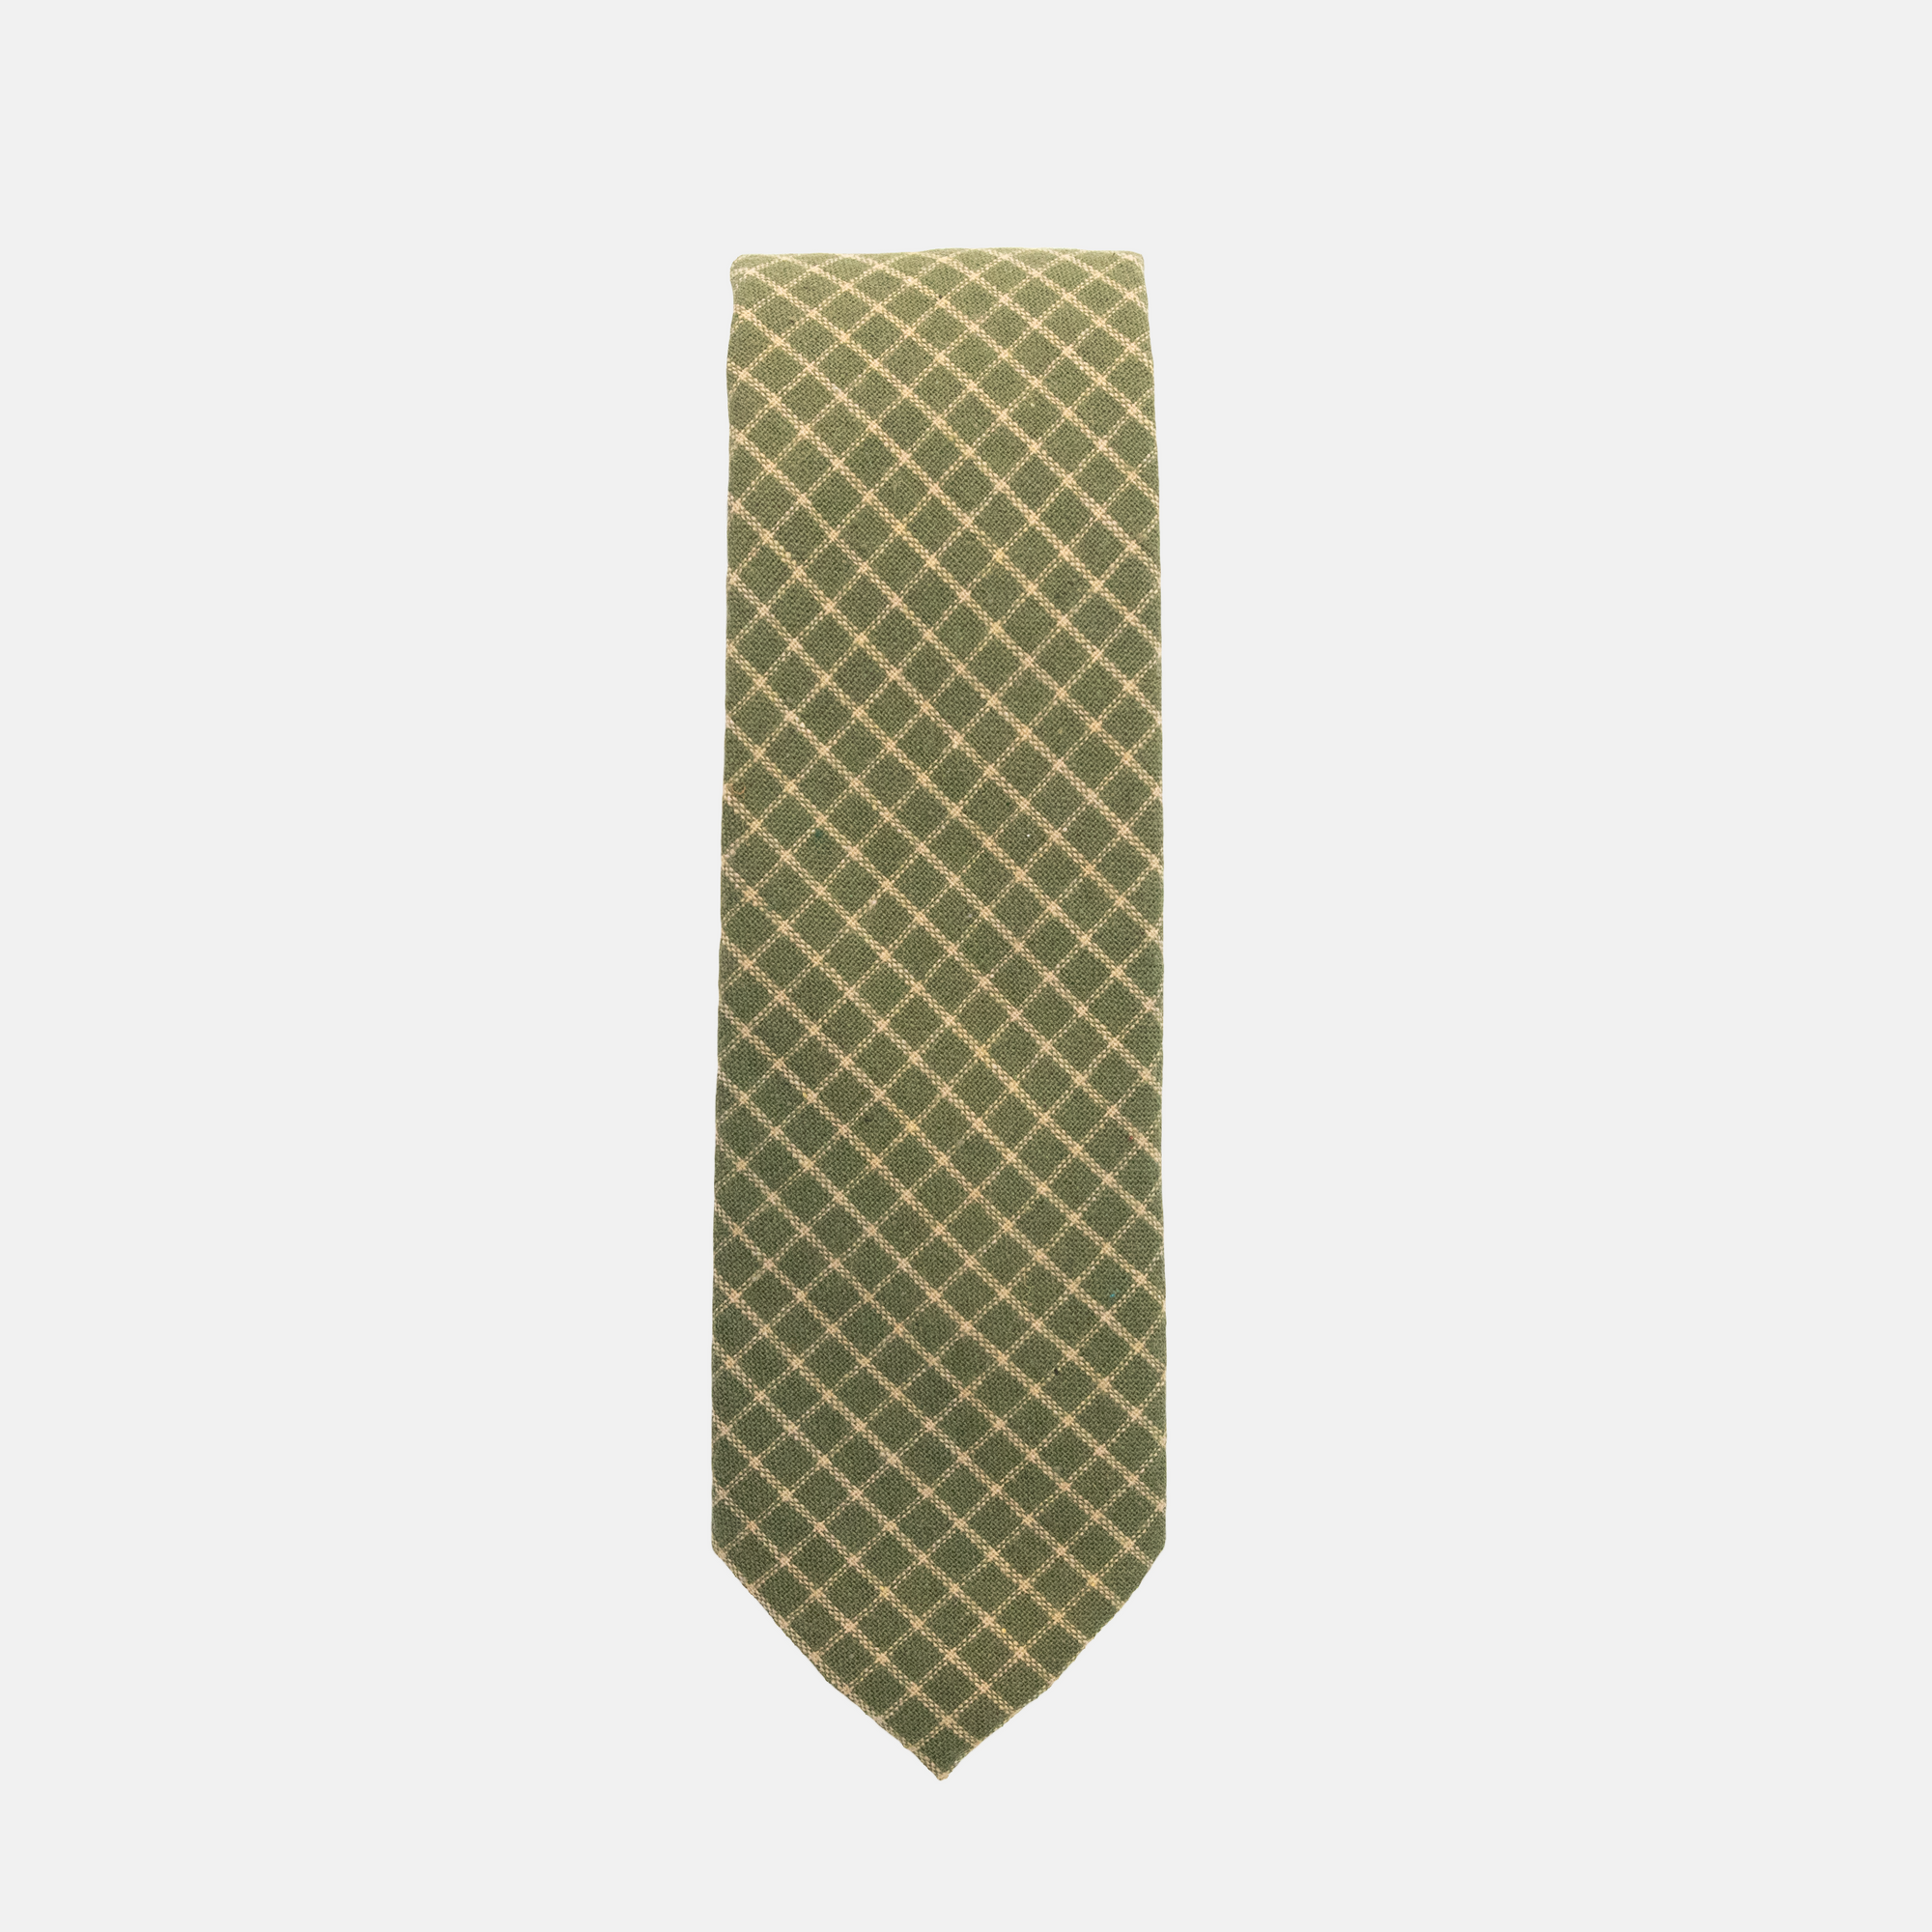 HUNTER - Men's Tie